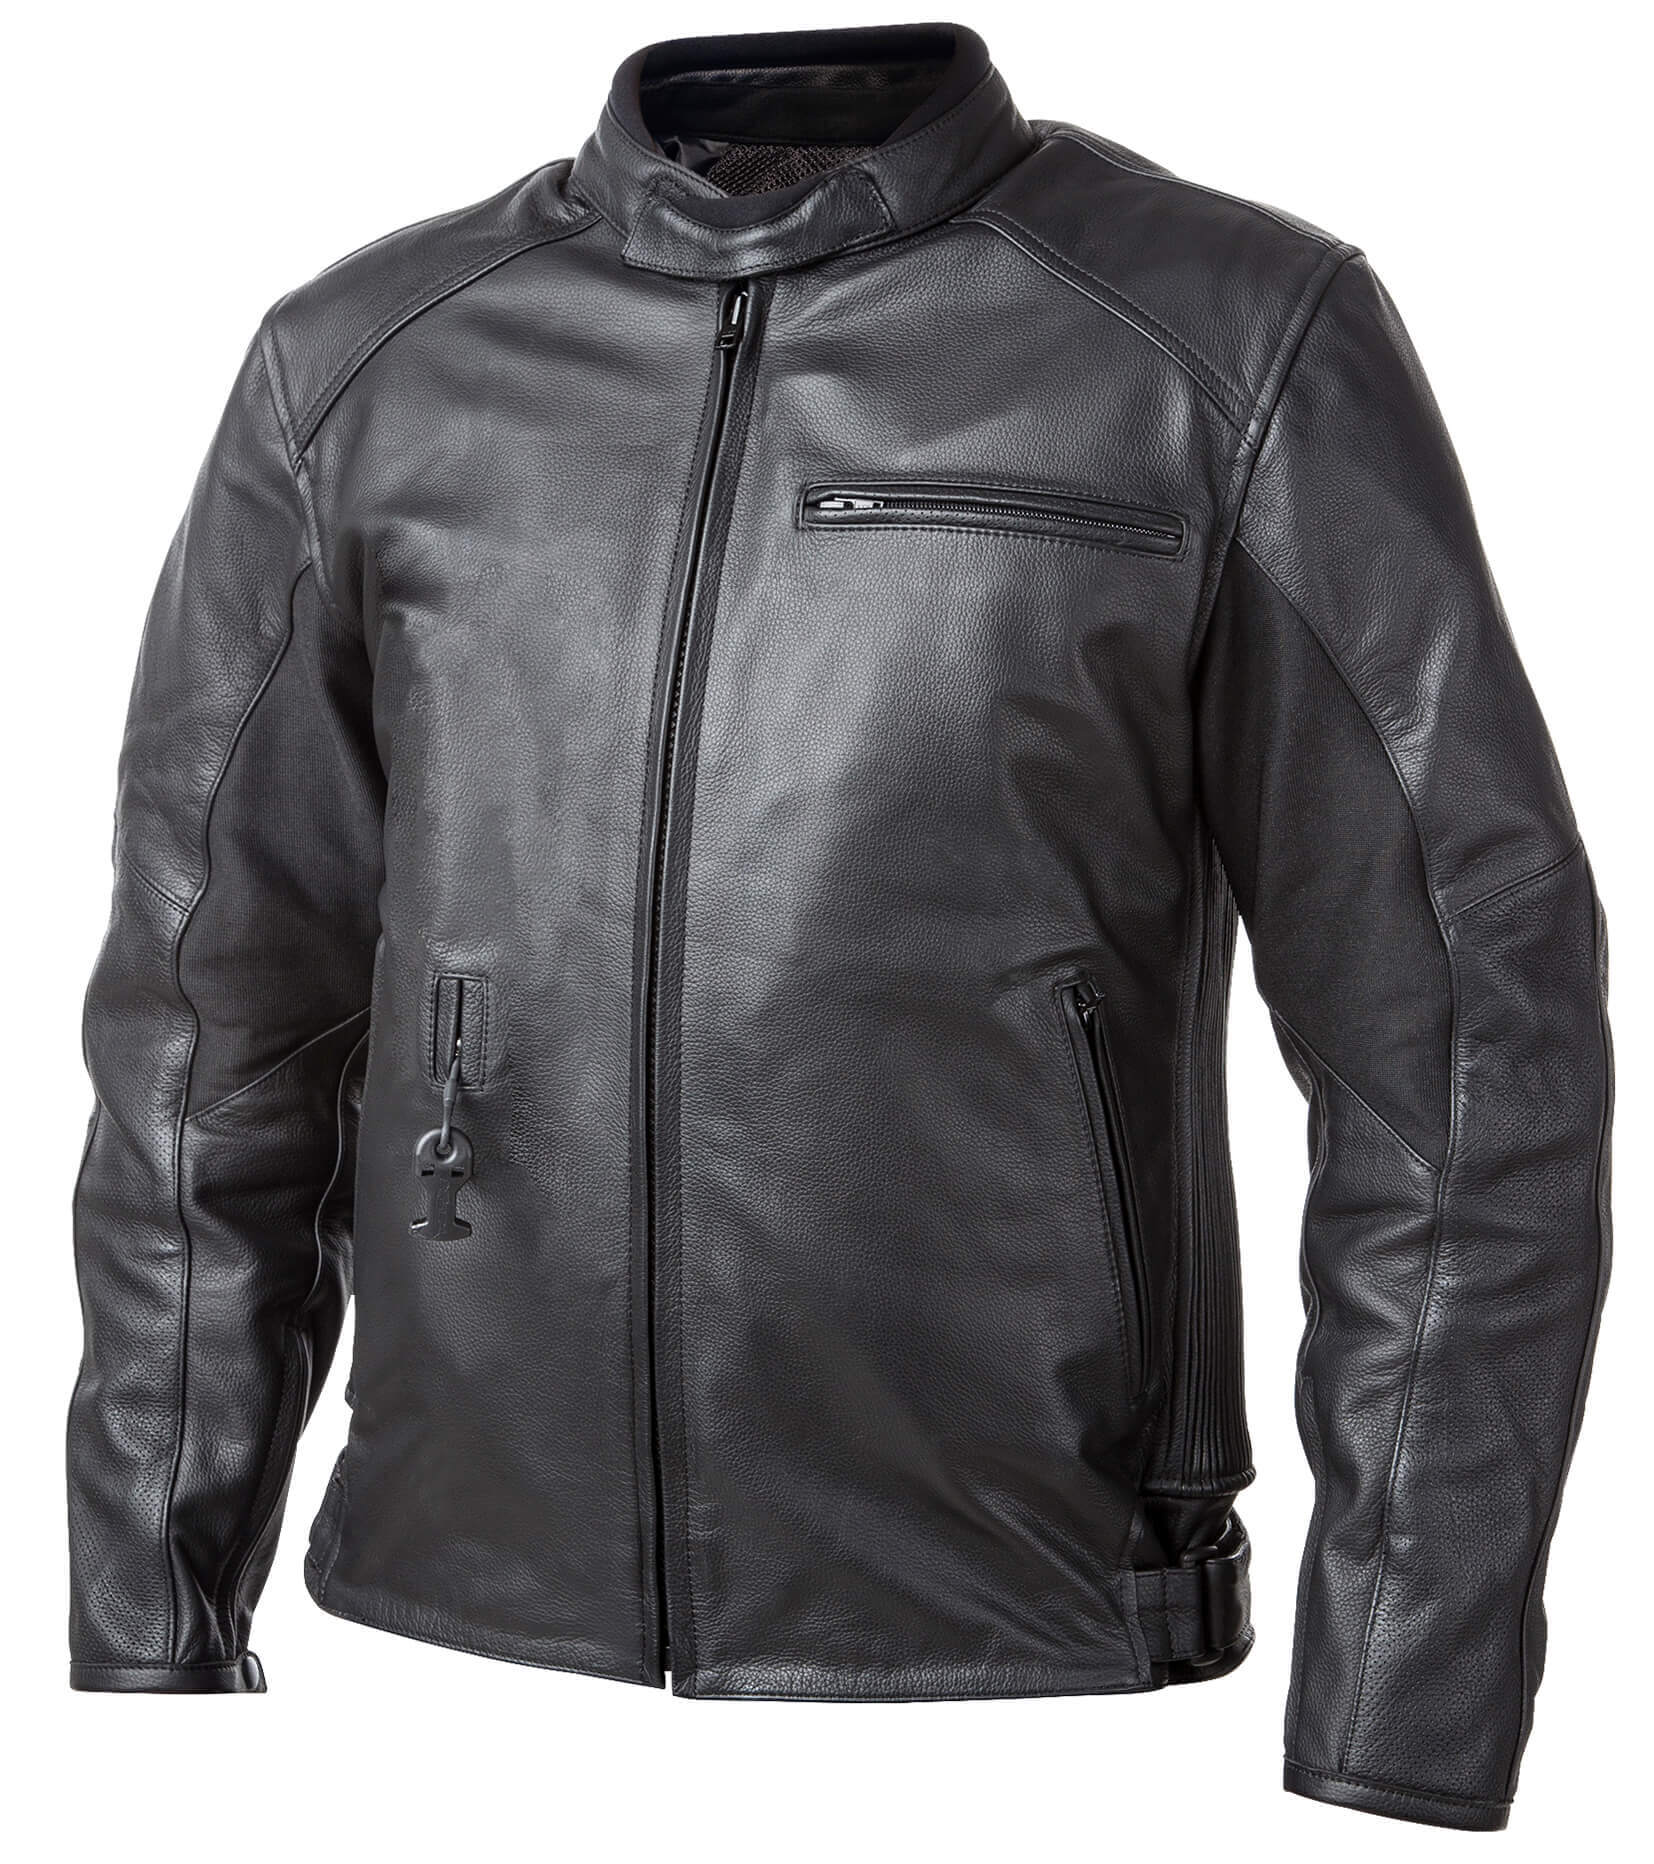 Airbag kabát Helite Roadster Vintage fekete bőr  Fekete  M